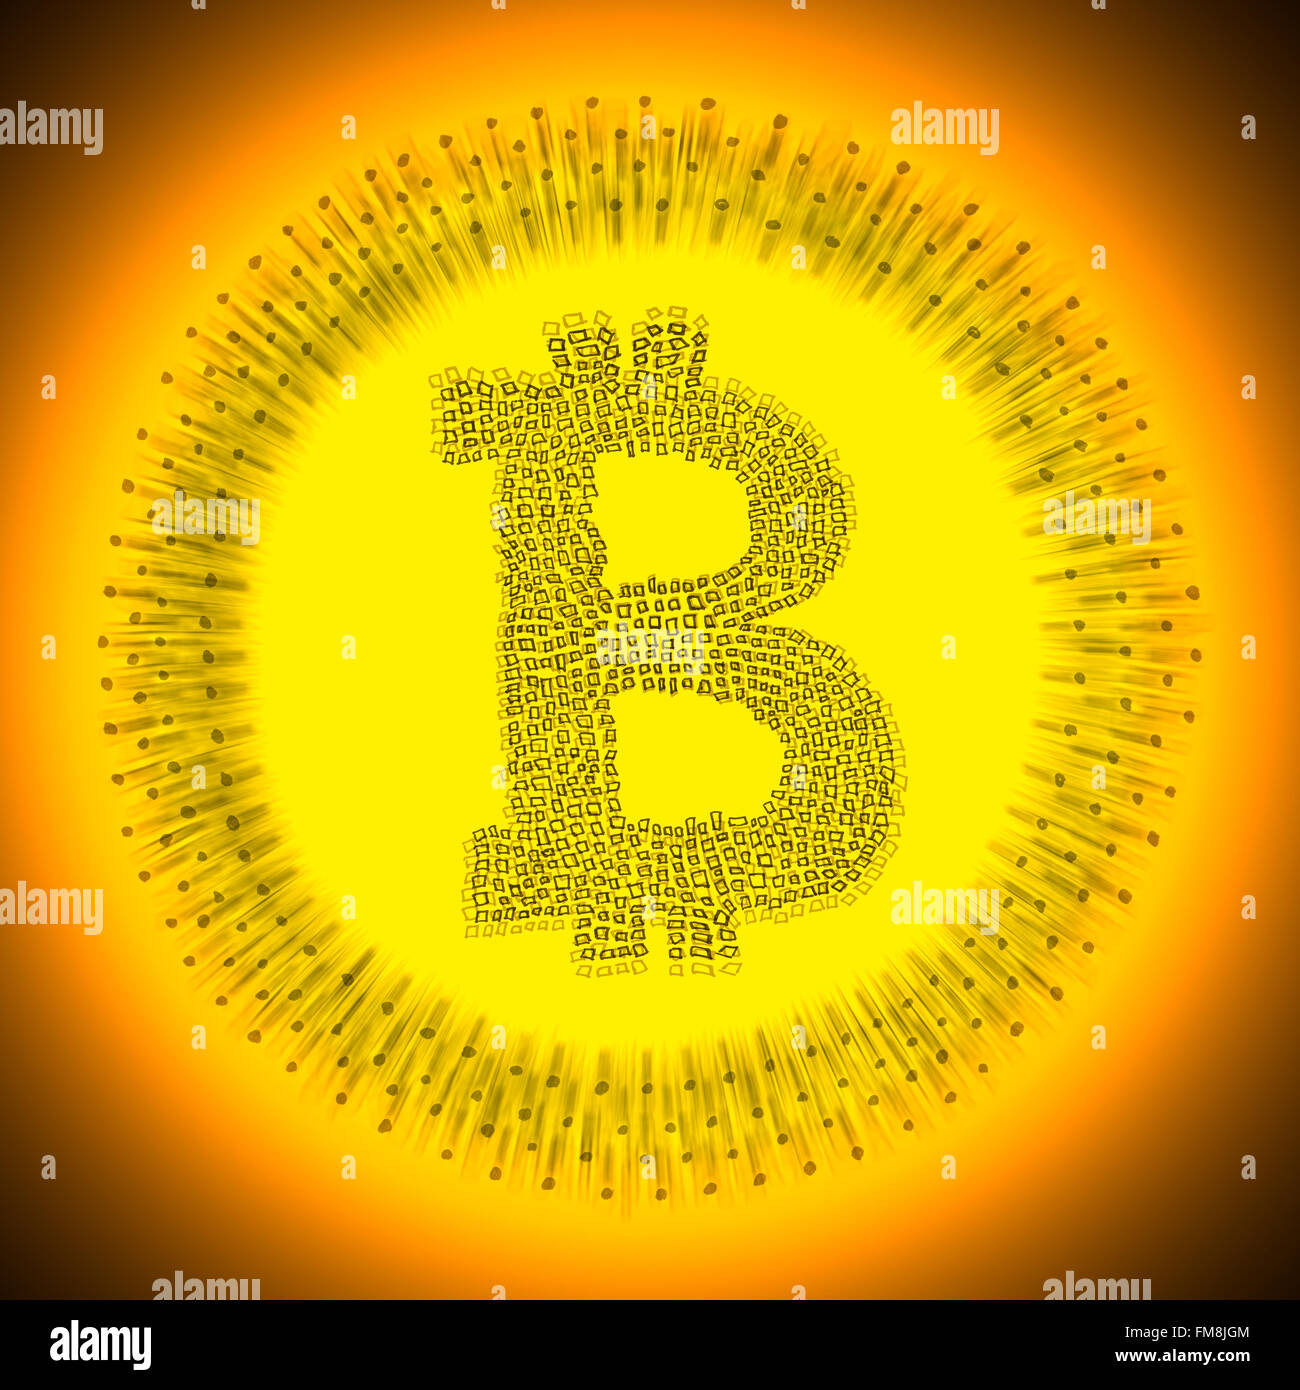 Oro Digital ilustración Bitcoin. El logotipo de una moneda electrónica descentralizada crypto moneda. Foto de stock